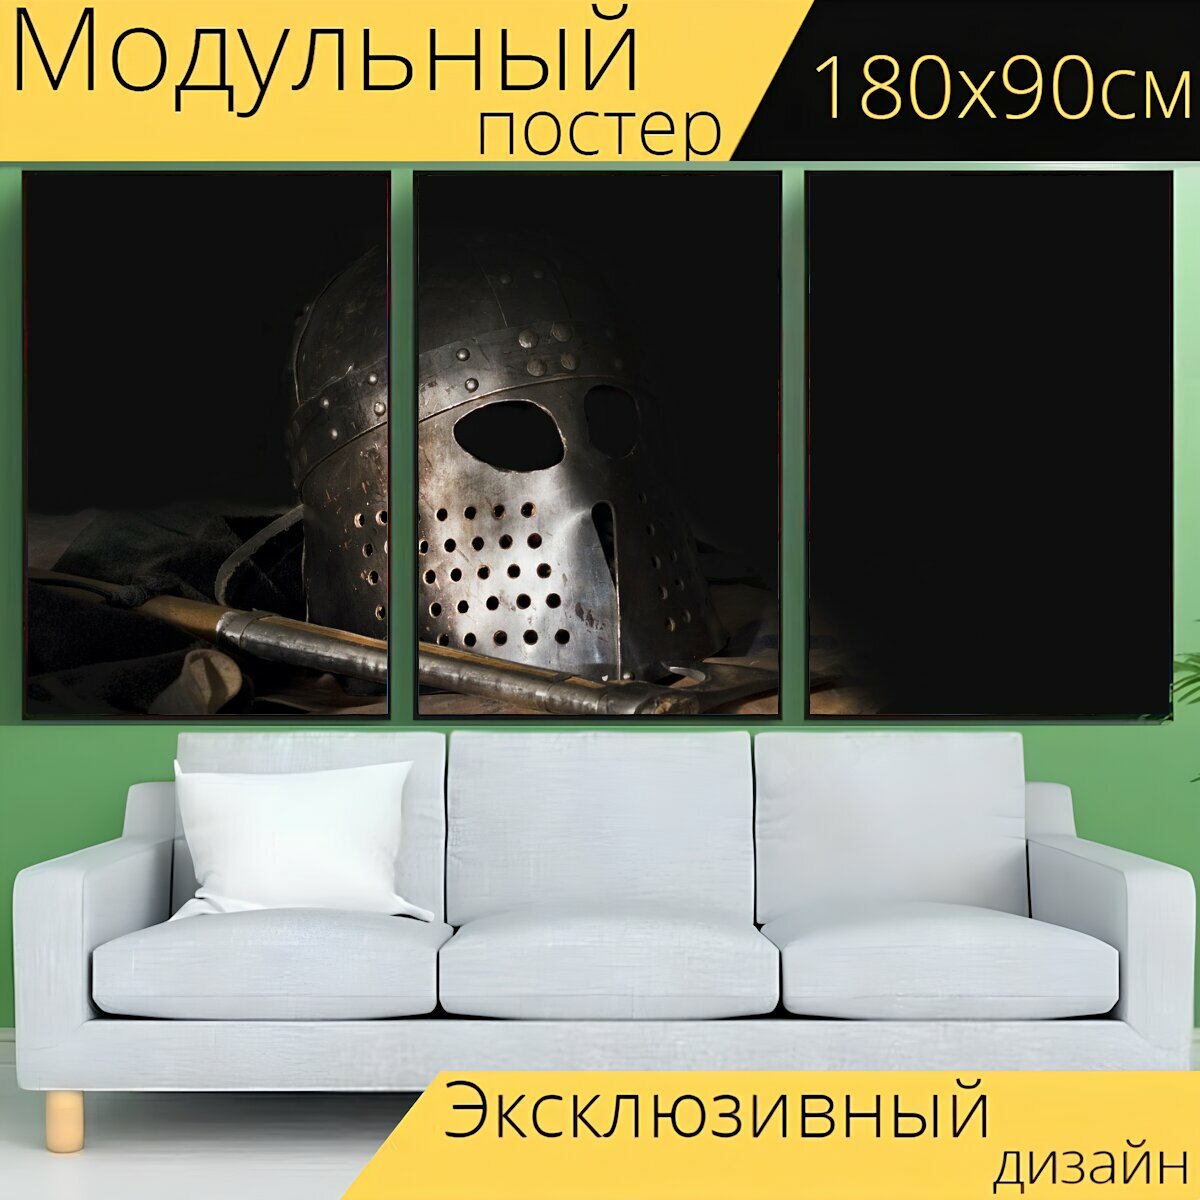 Модульный постер "Шлем, топор, викинги" 180 x 90 см. для интерьера